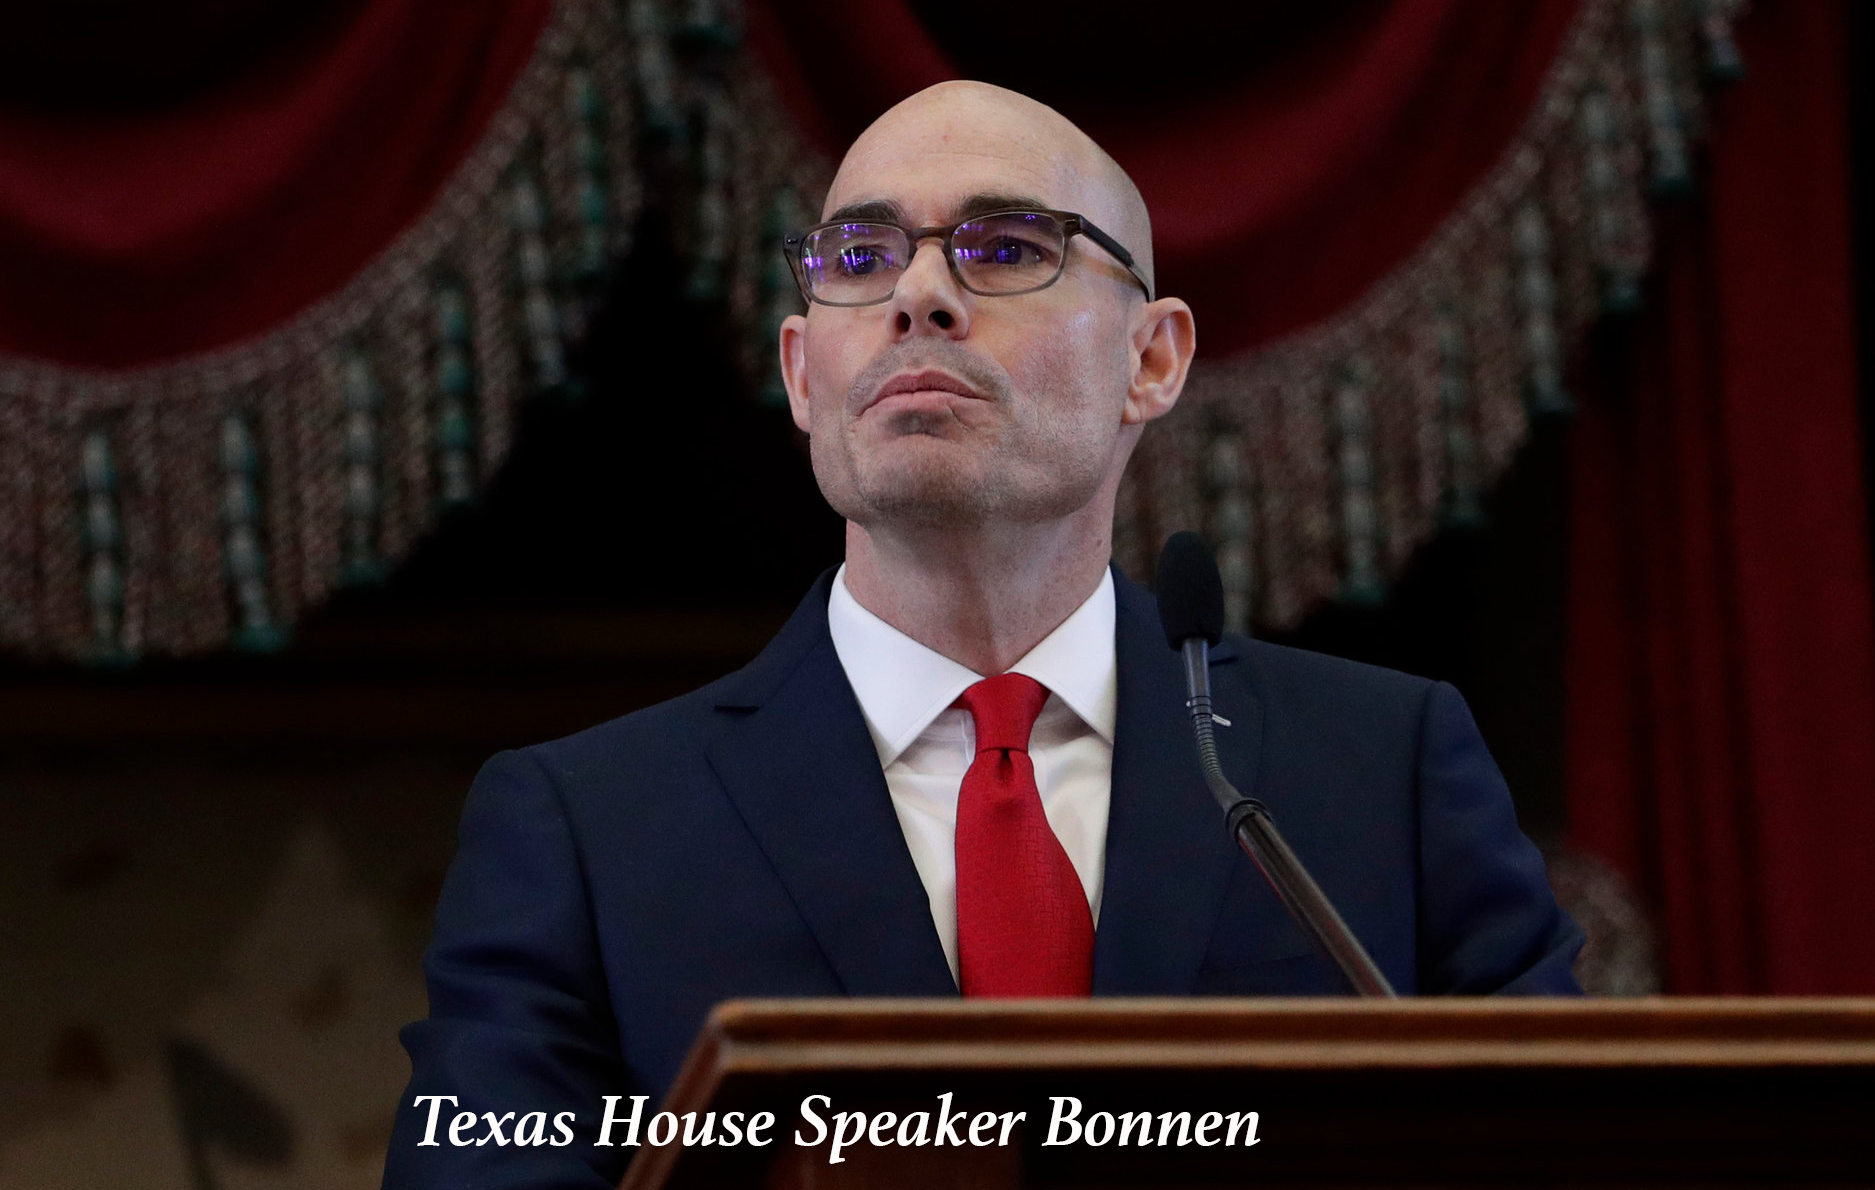 Texas House Speaker Bonnen